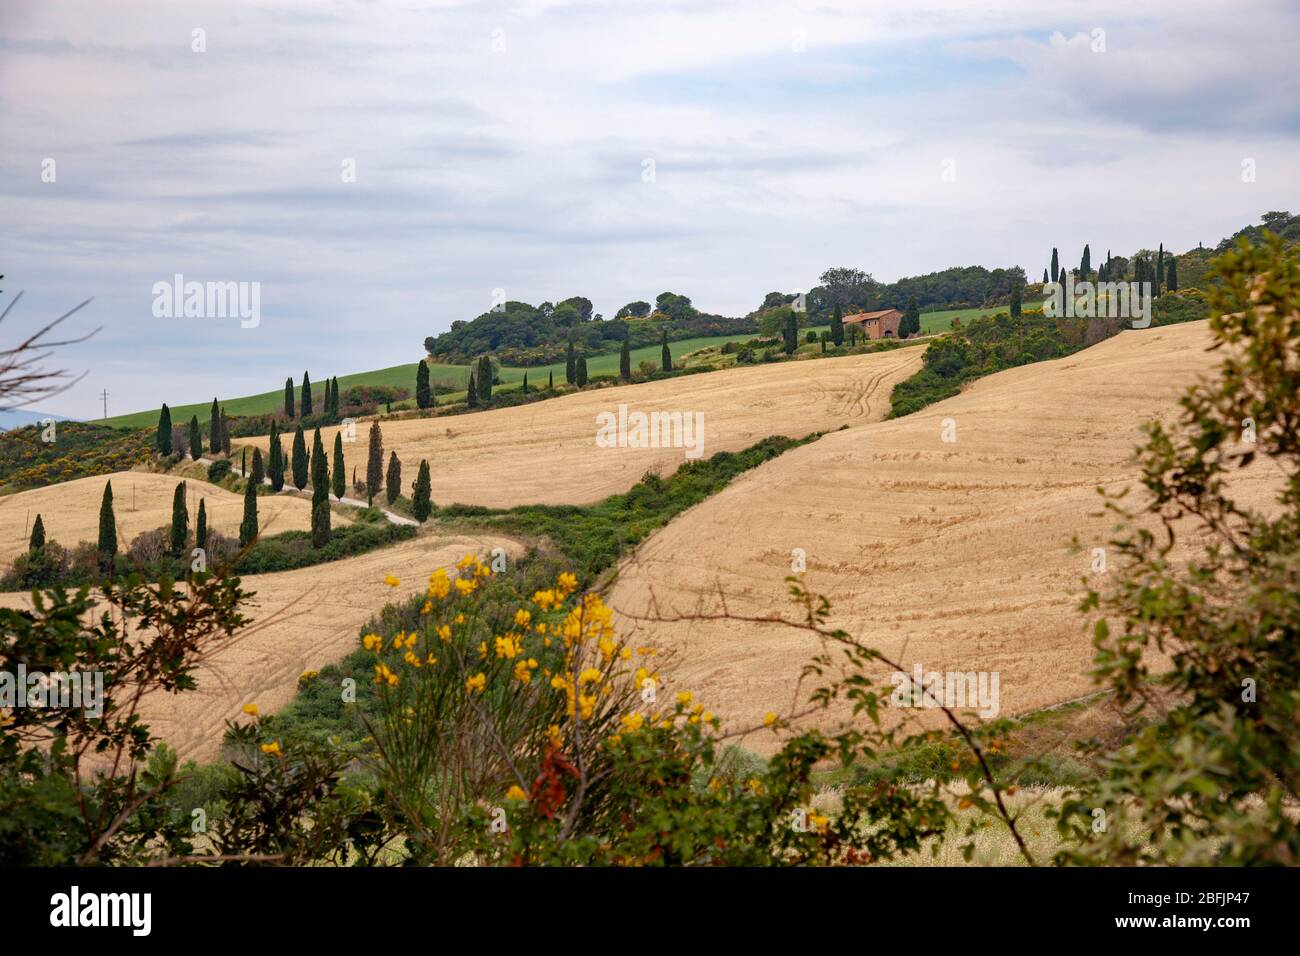 Nelle vicinanze di Montepulciano, un allineamento di cipressi lungo un percorso che conduce ad un'azienda agricola (Toscana - Italia). Alignement de cyprès en Toscane (Italie). Foto Stock